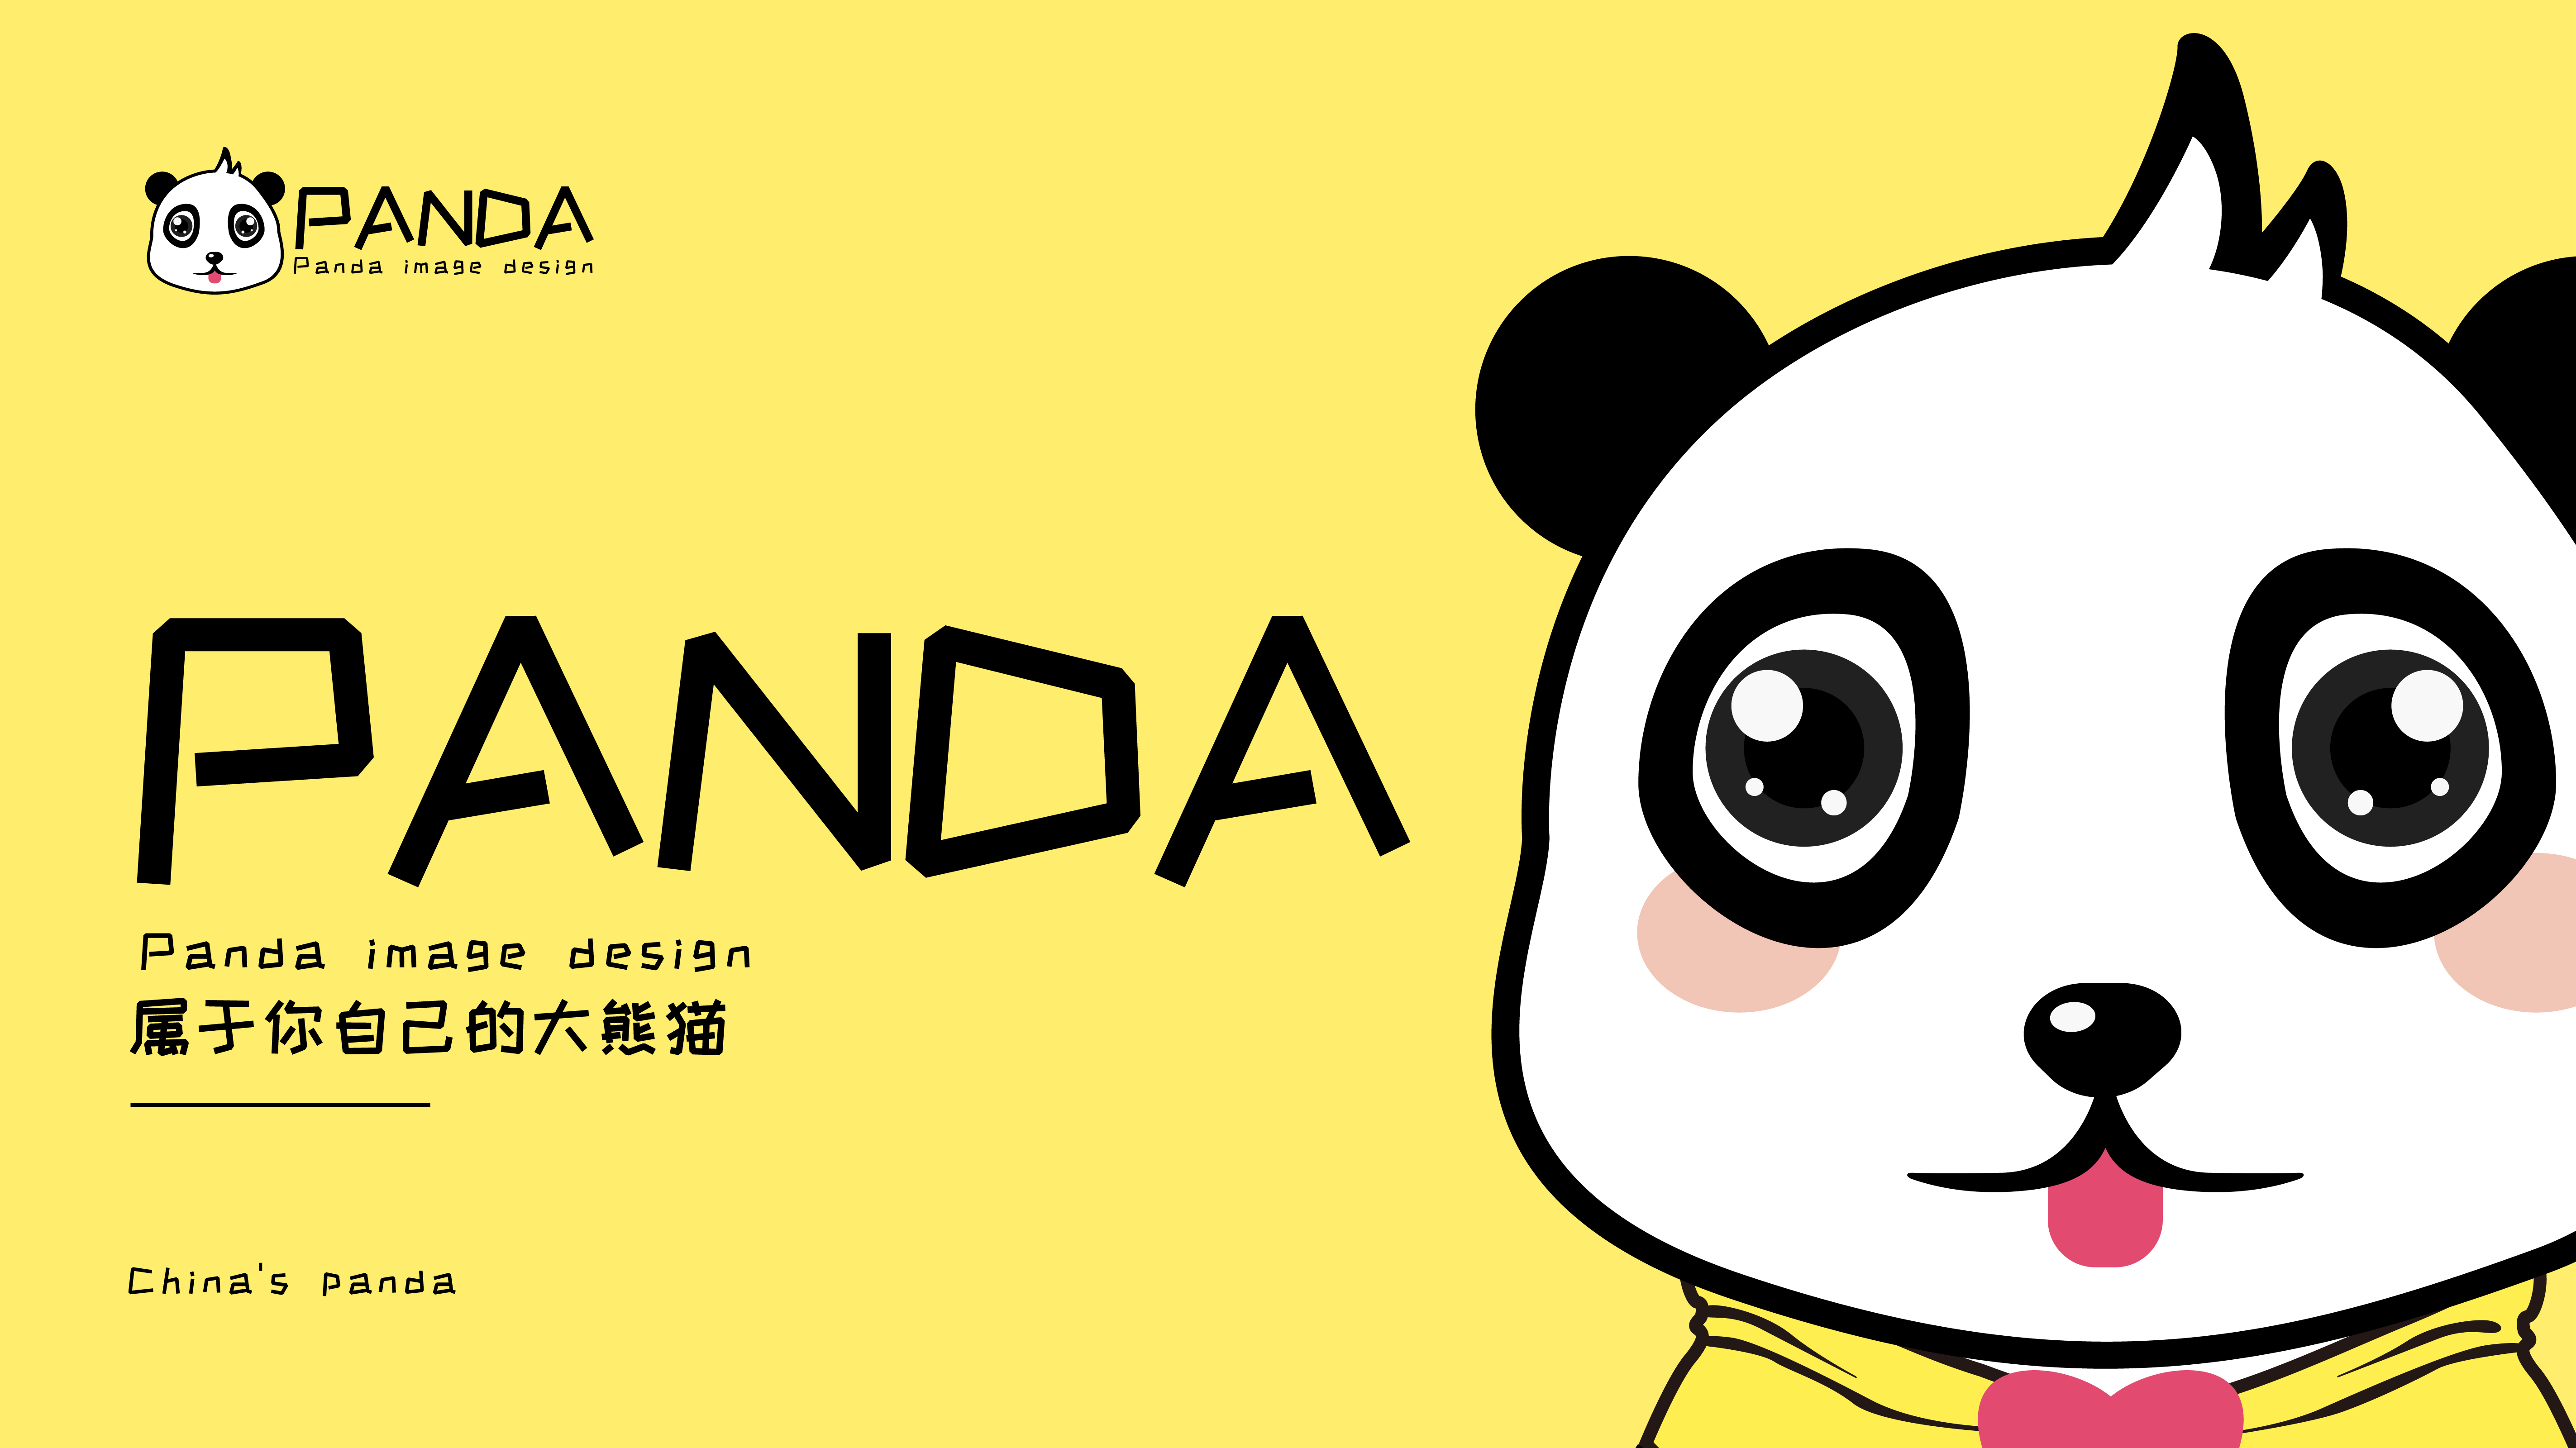 中国大熊猫国际形象设计